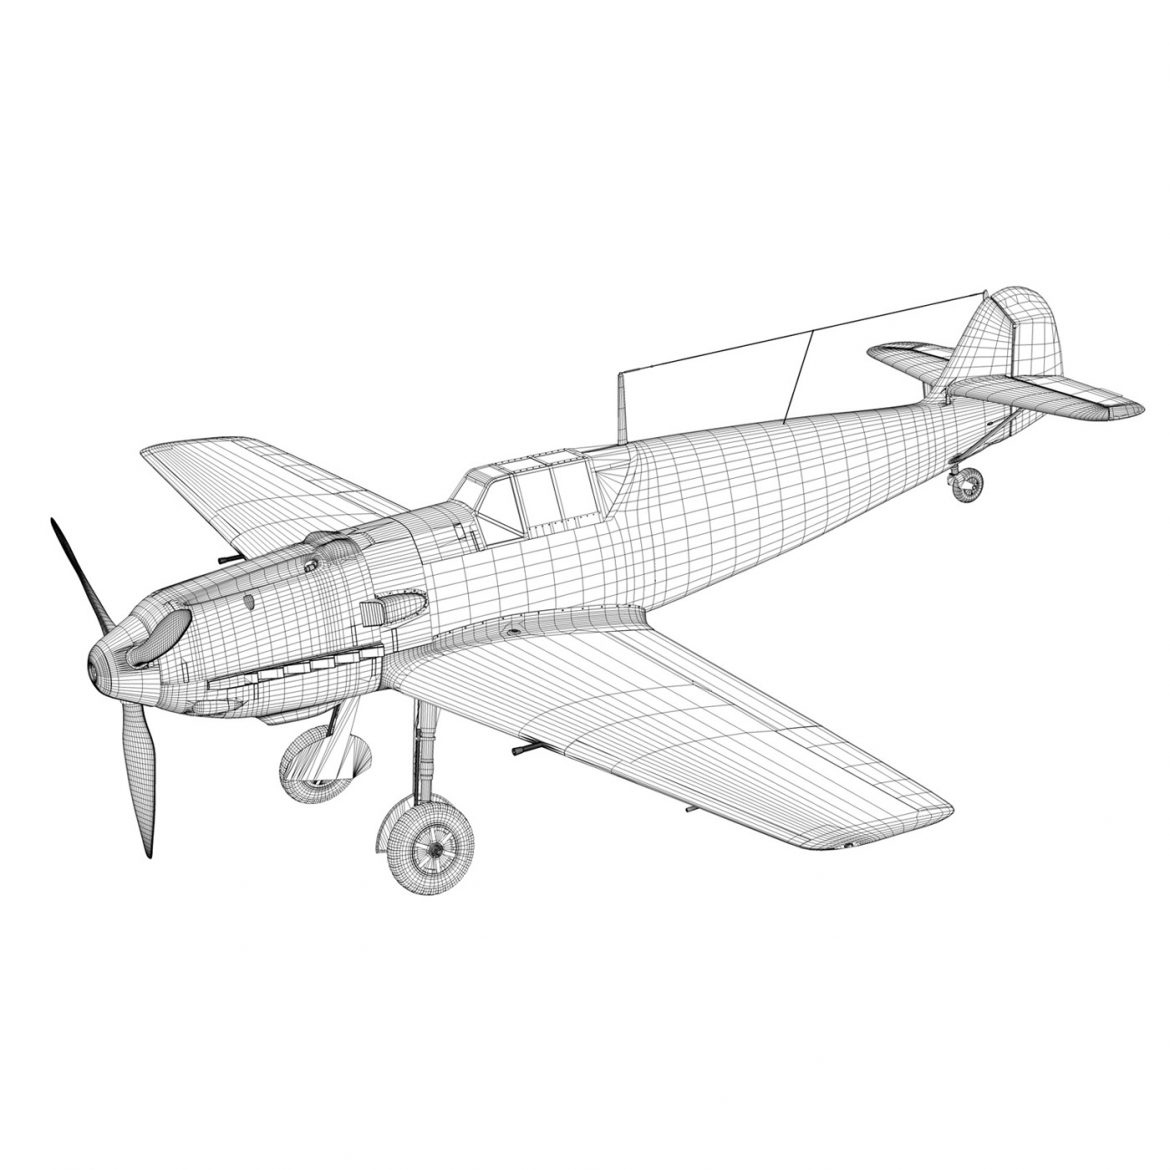 messerschmitt – bf-109 e – jg26 3d model 3ds fbx c4d lwo obj 301451